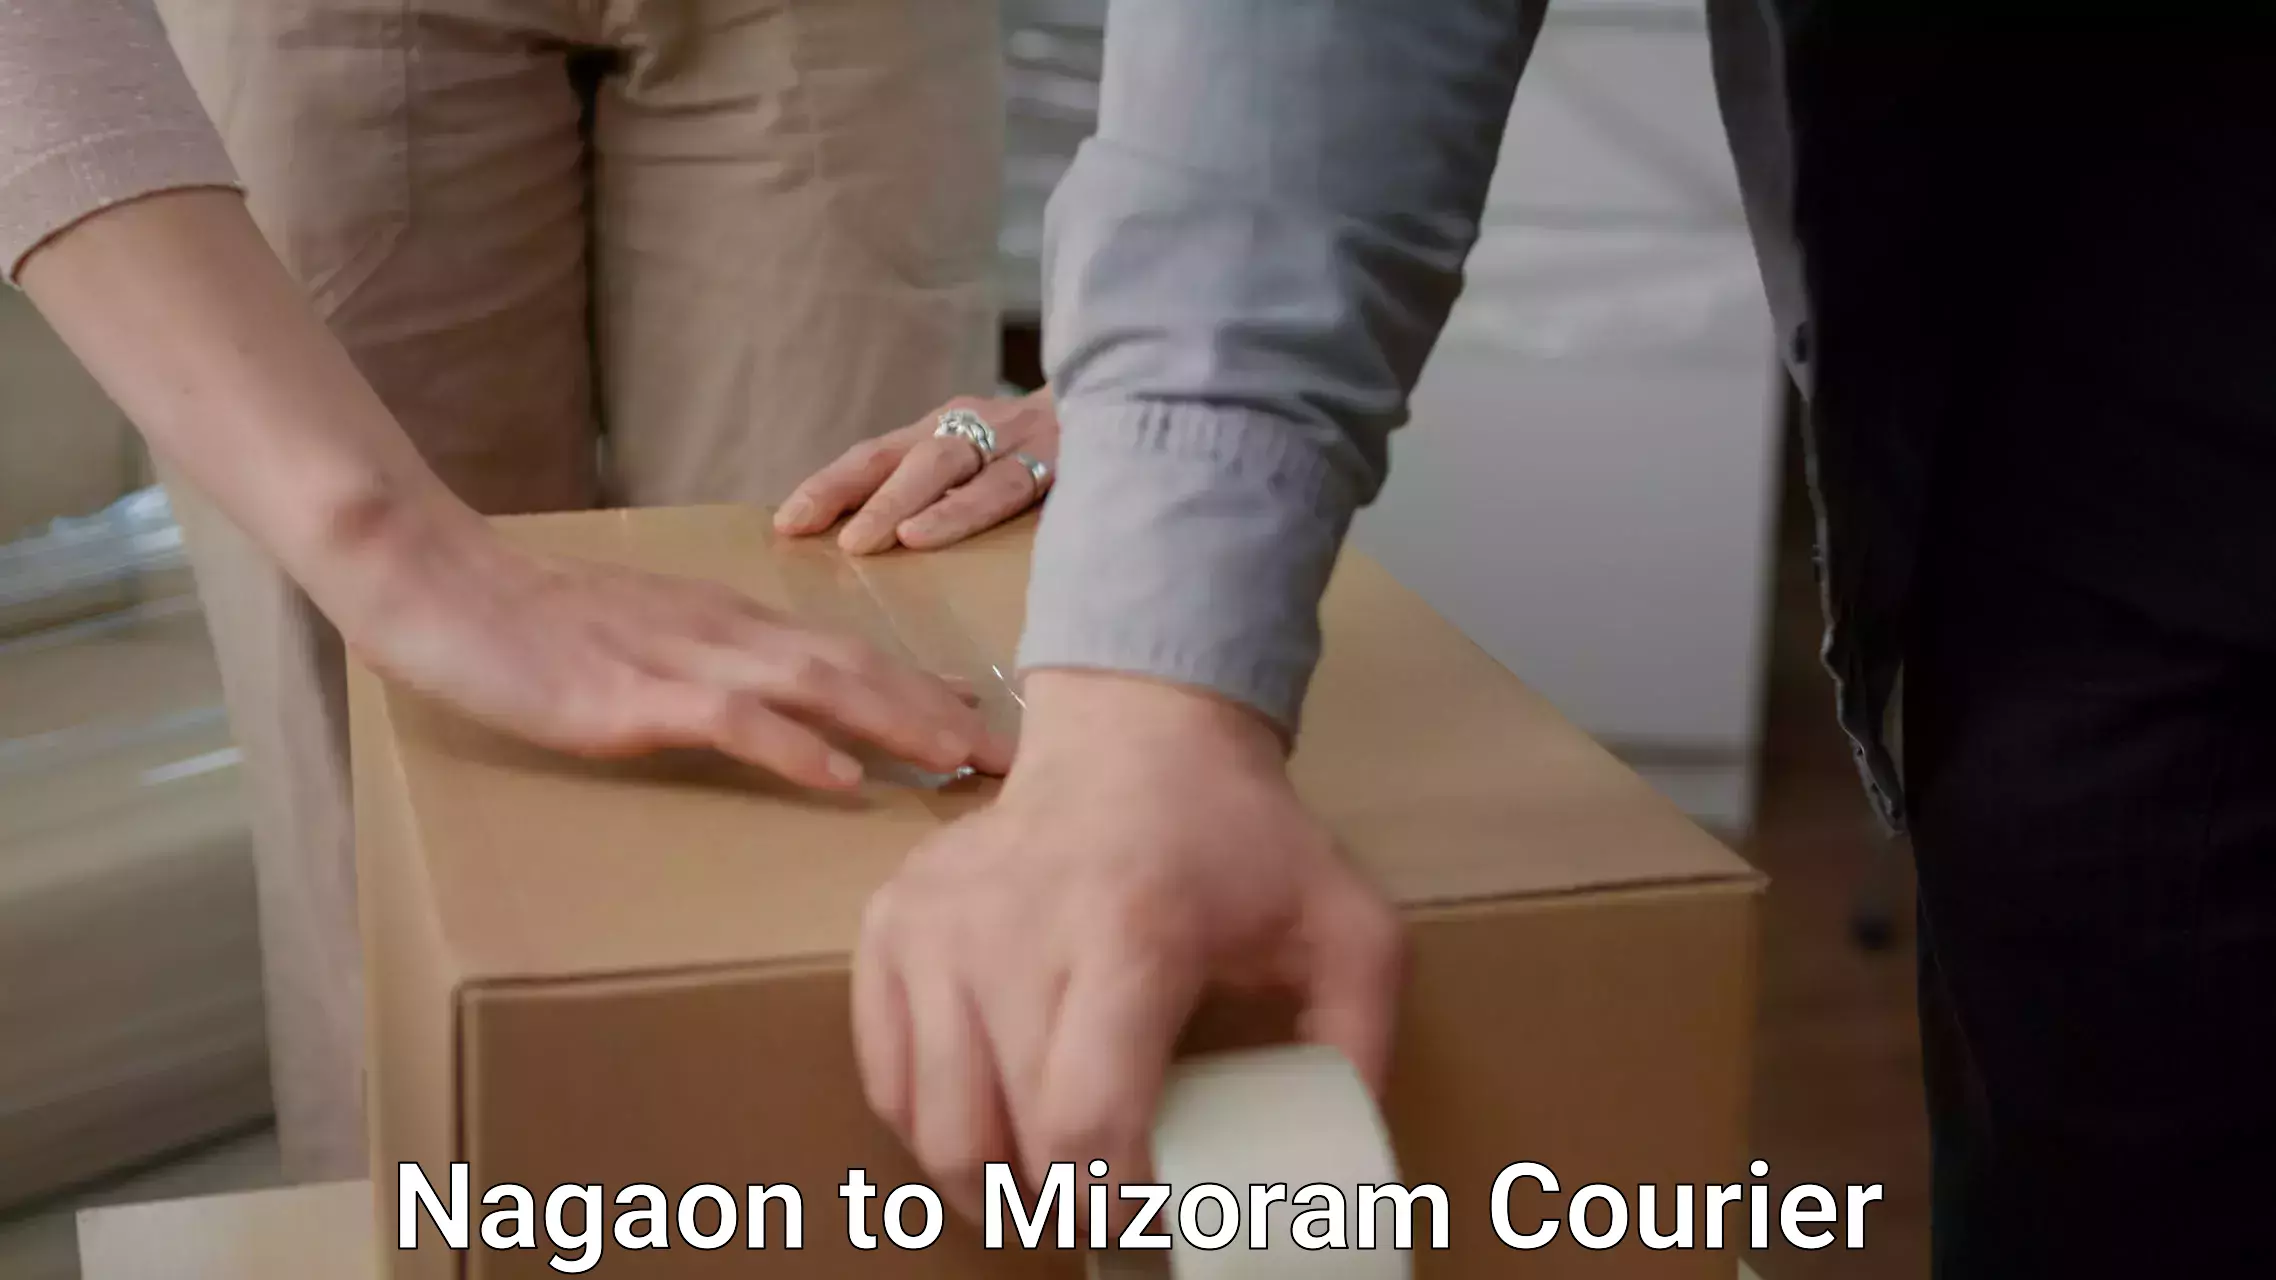 Furniture moving experts Nagaon to Mizoram